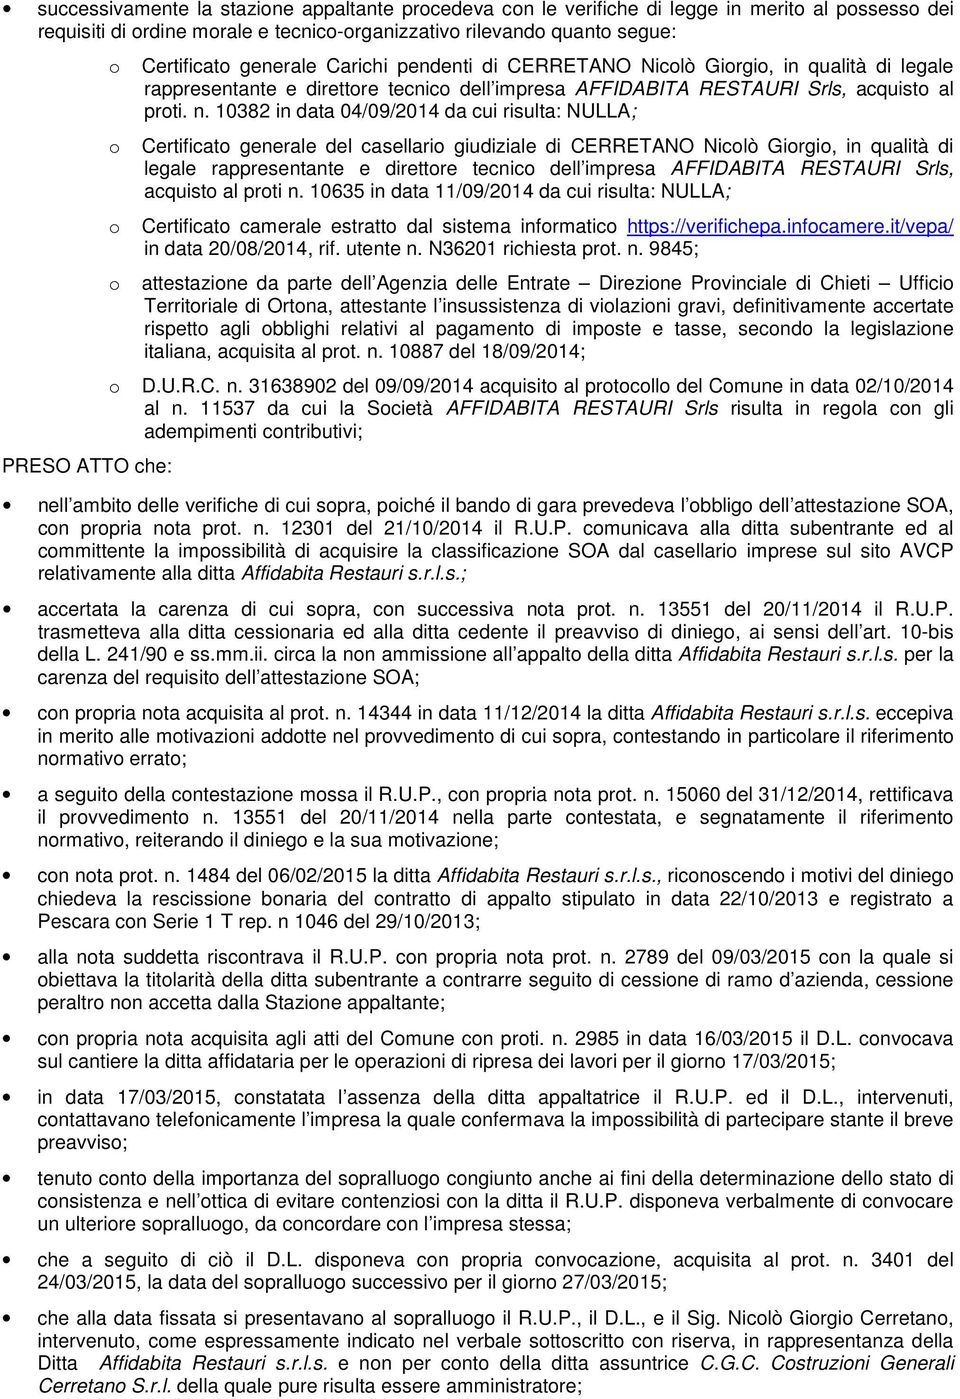 10382 in data 04/09/2014 da cui risulta: NULLA; Certificat generale del casellari giudiziale di CERRETANO Niclò Girgi, in qualità di legale rappresentante e direttre tecnic dell impresa AFFIDABITA